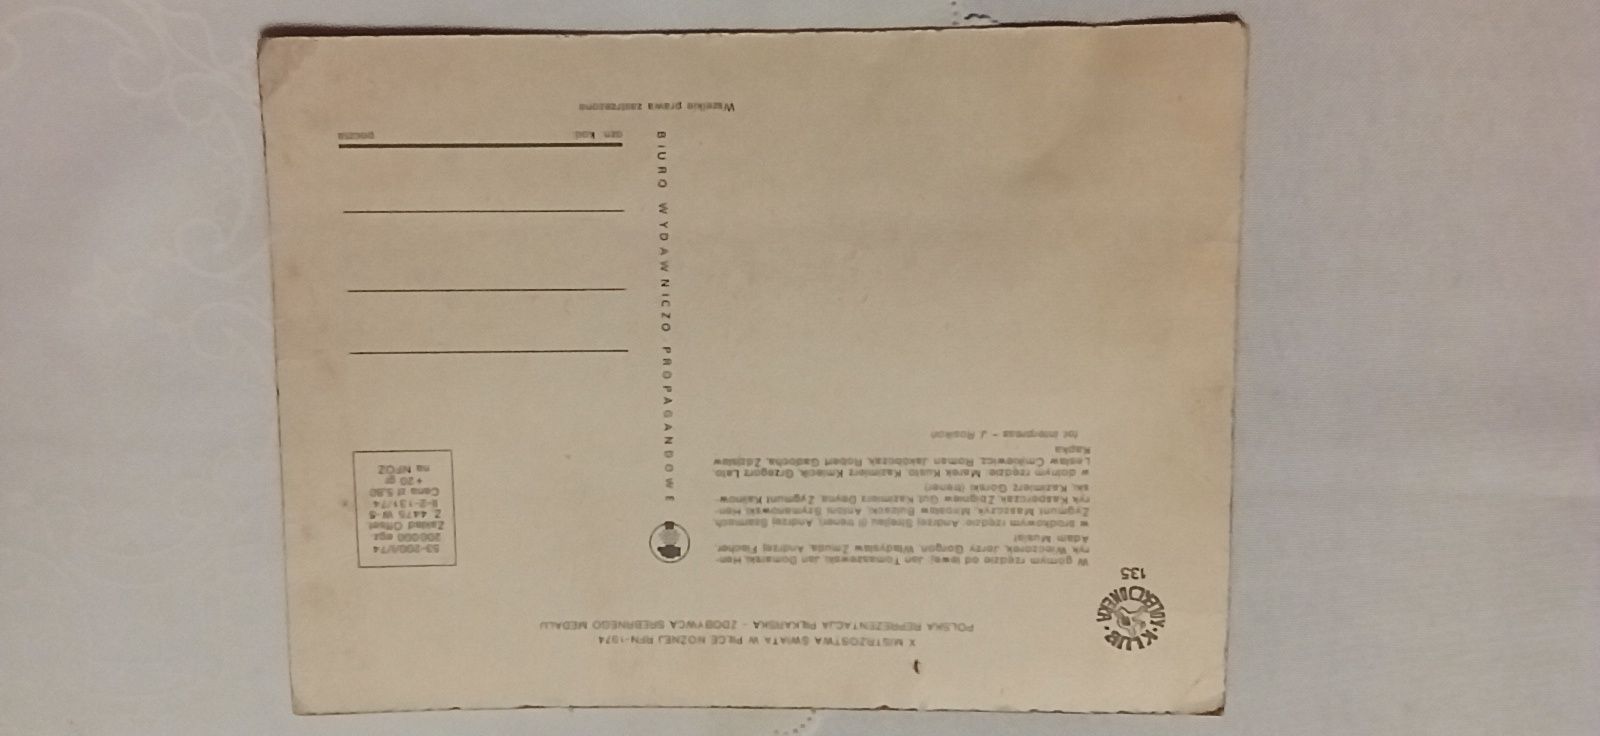 Karta pocztowa 1974 rok "Orły Górskiego"